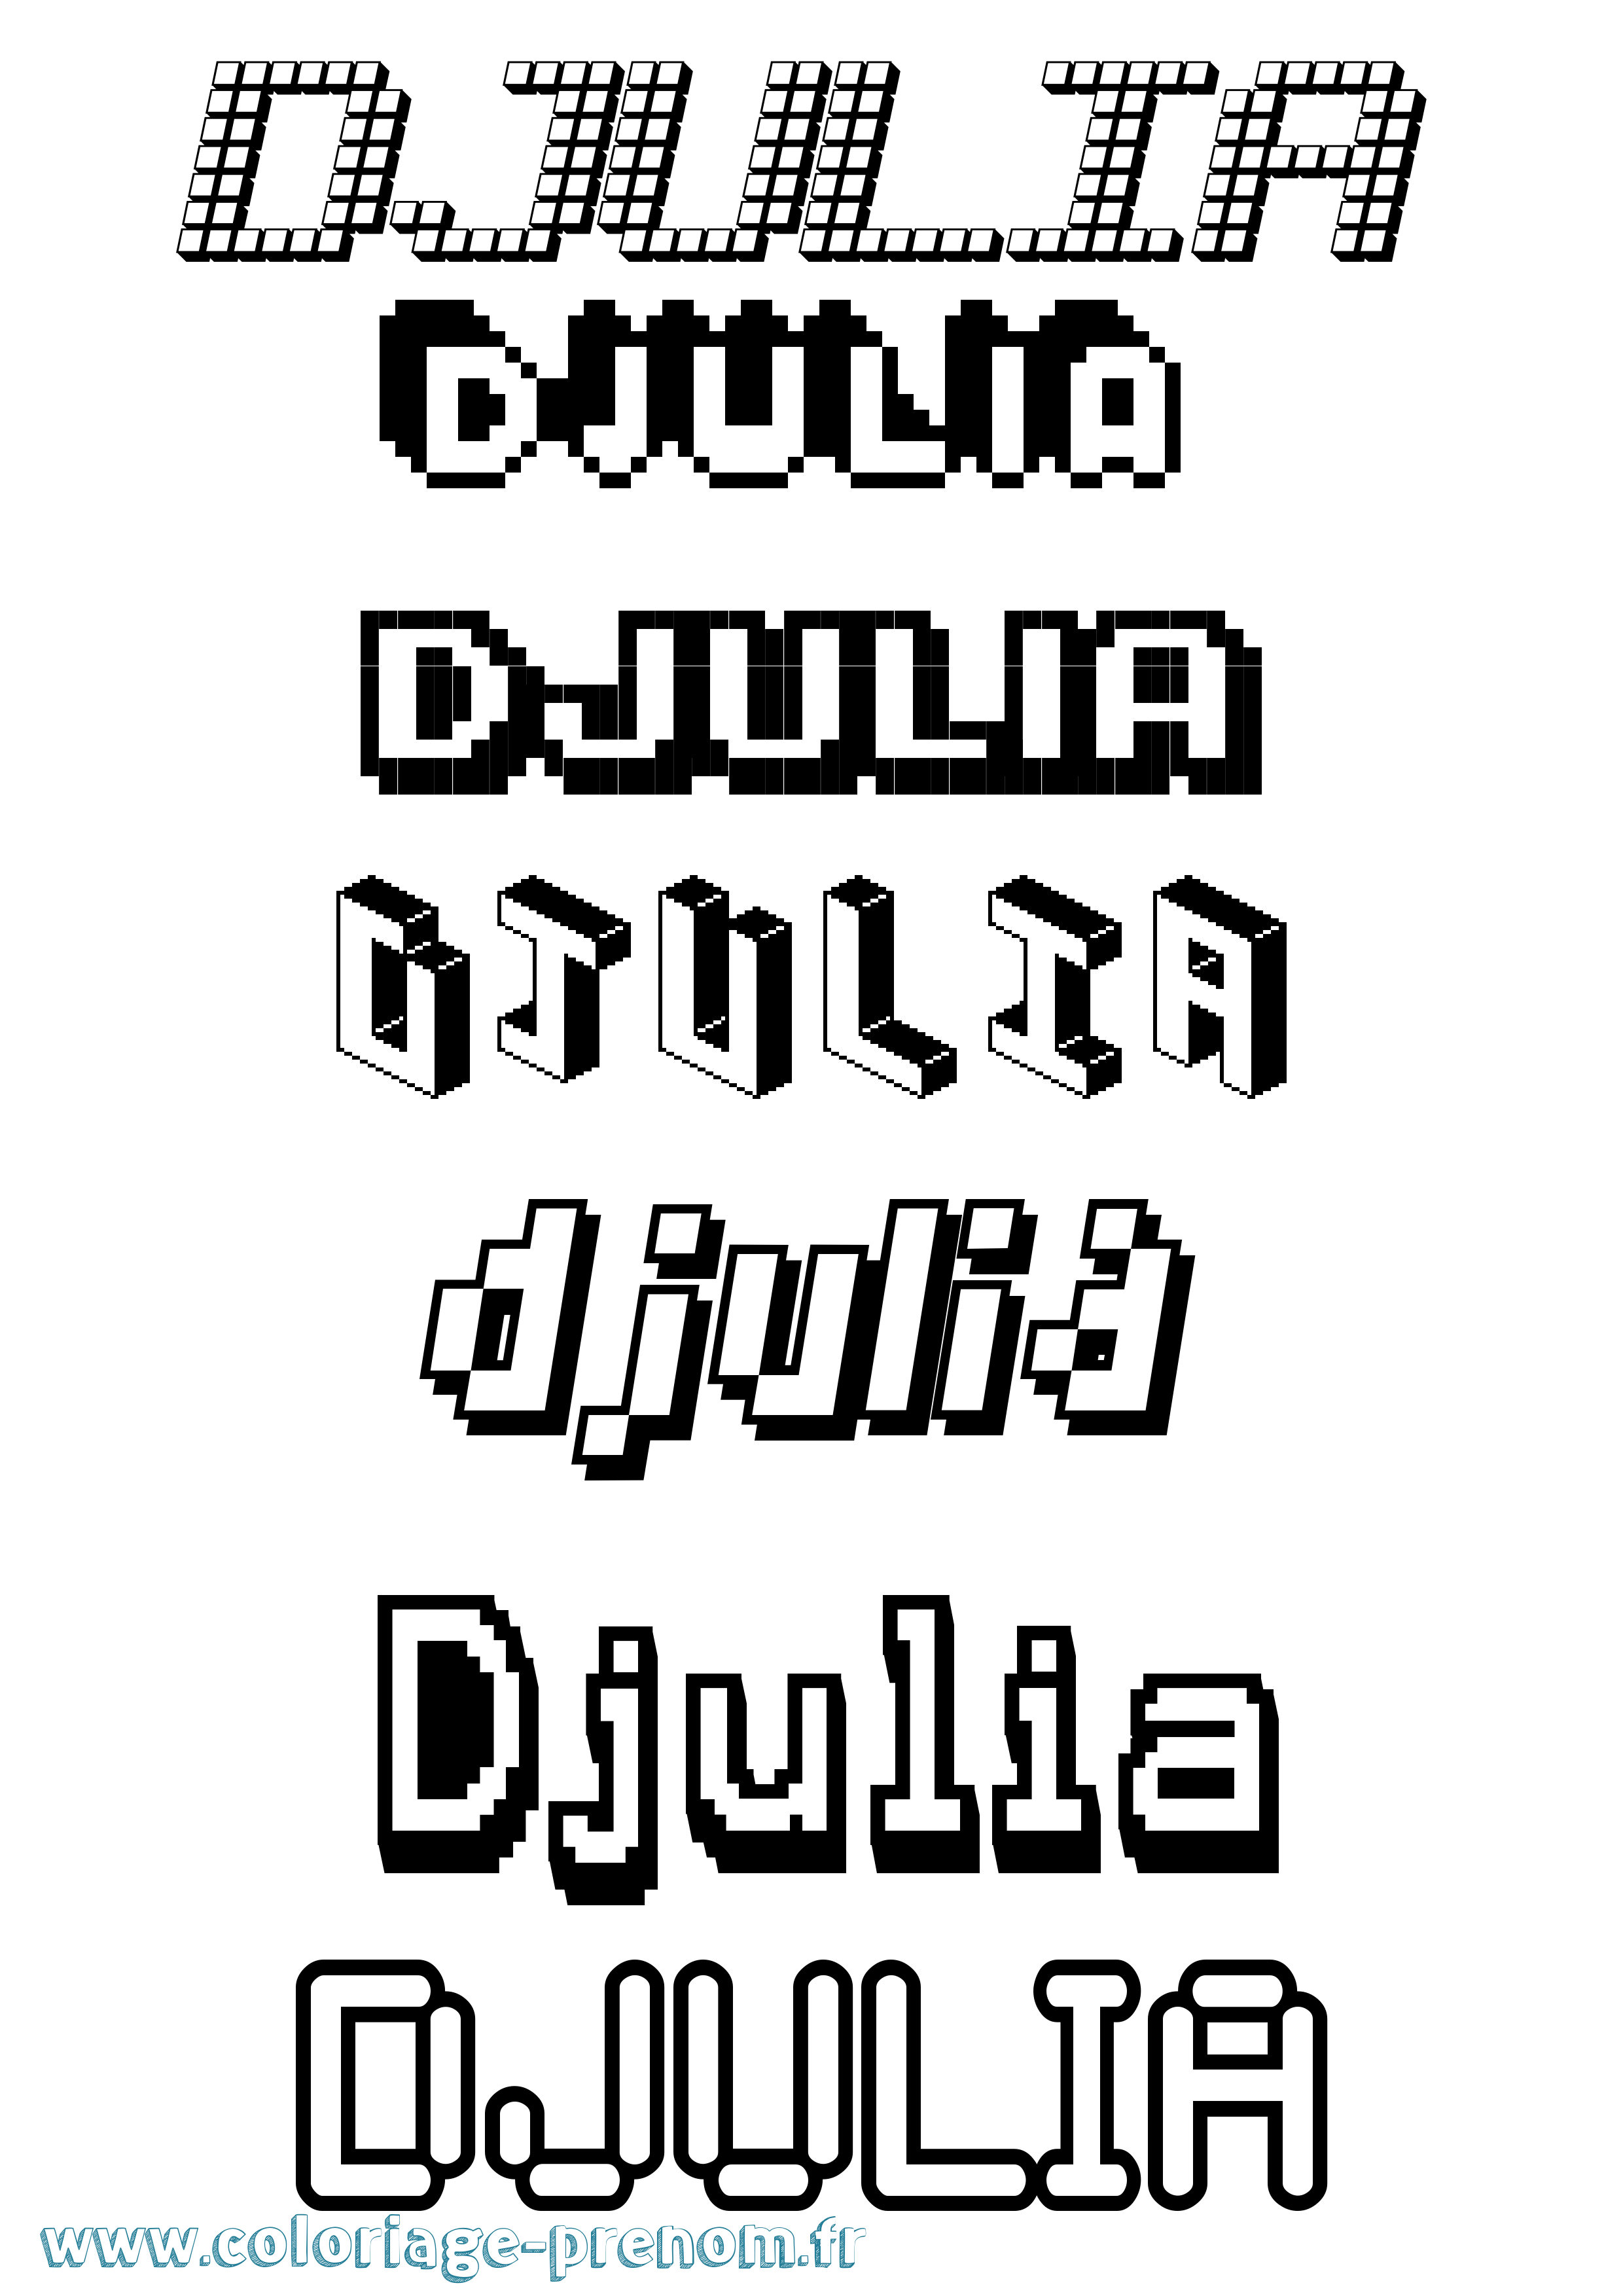 Coloriage prénom Djulia Pixel